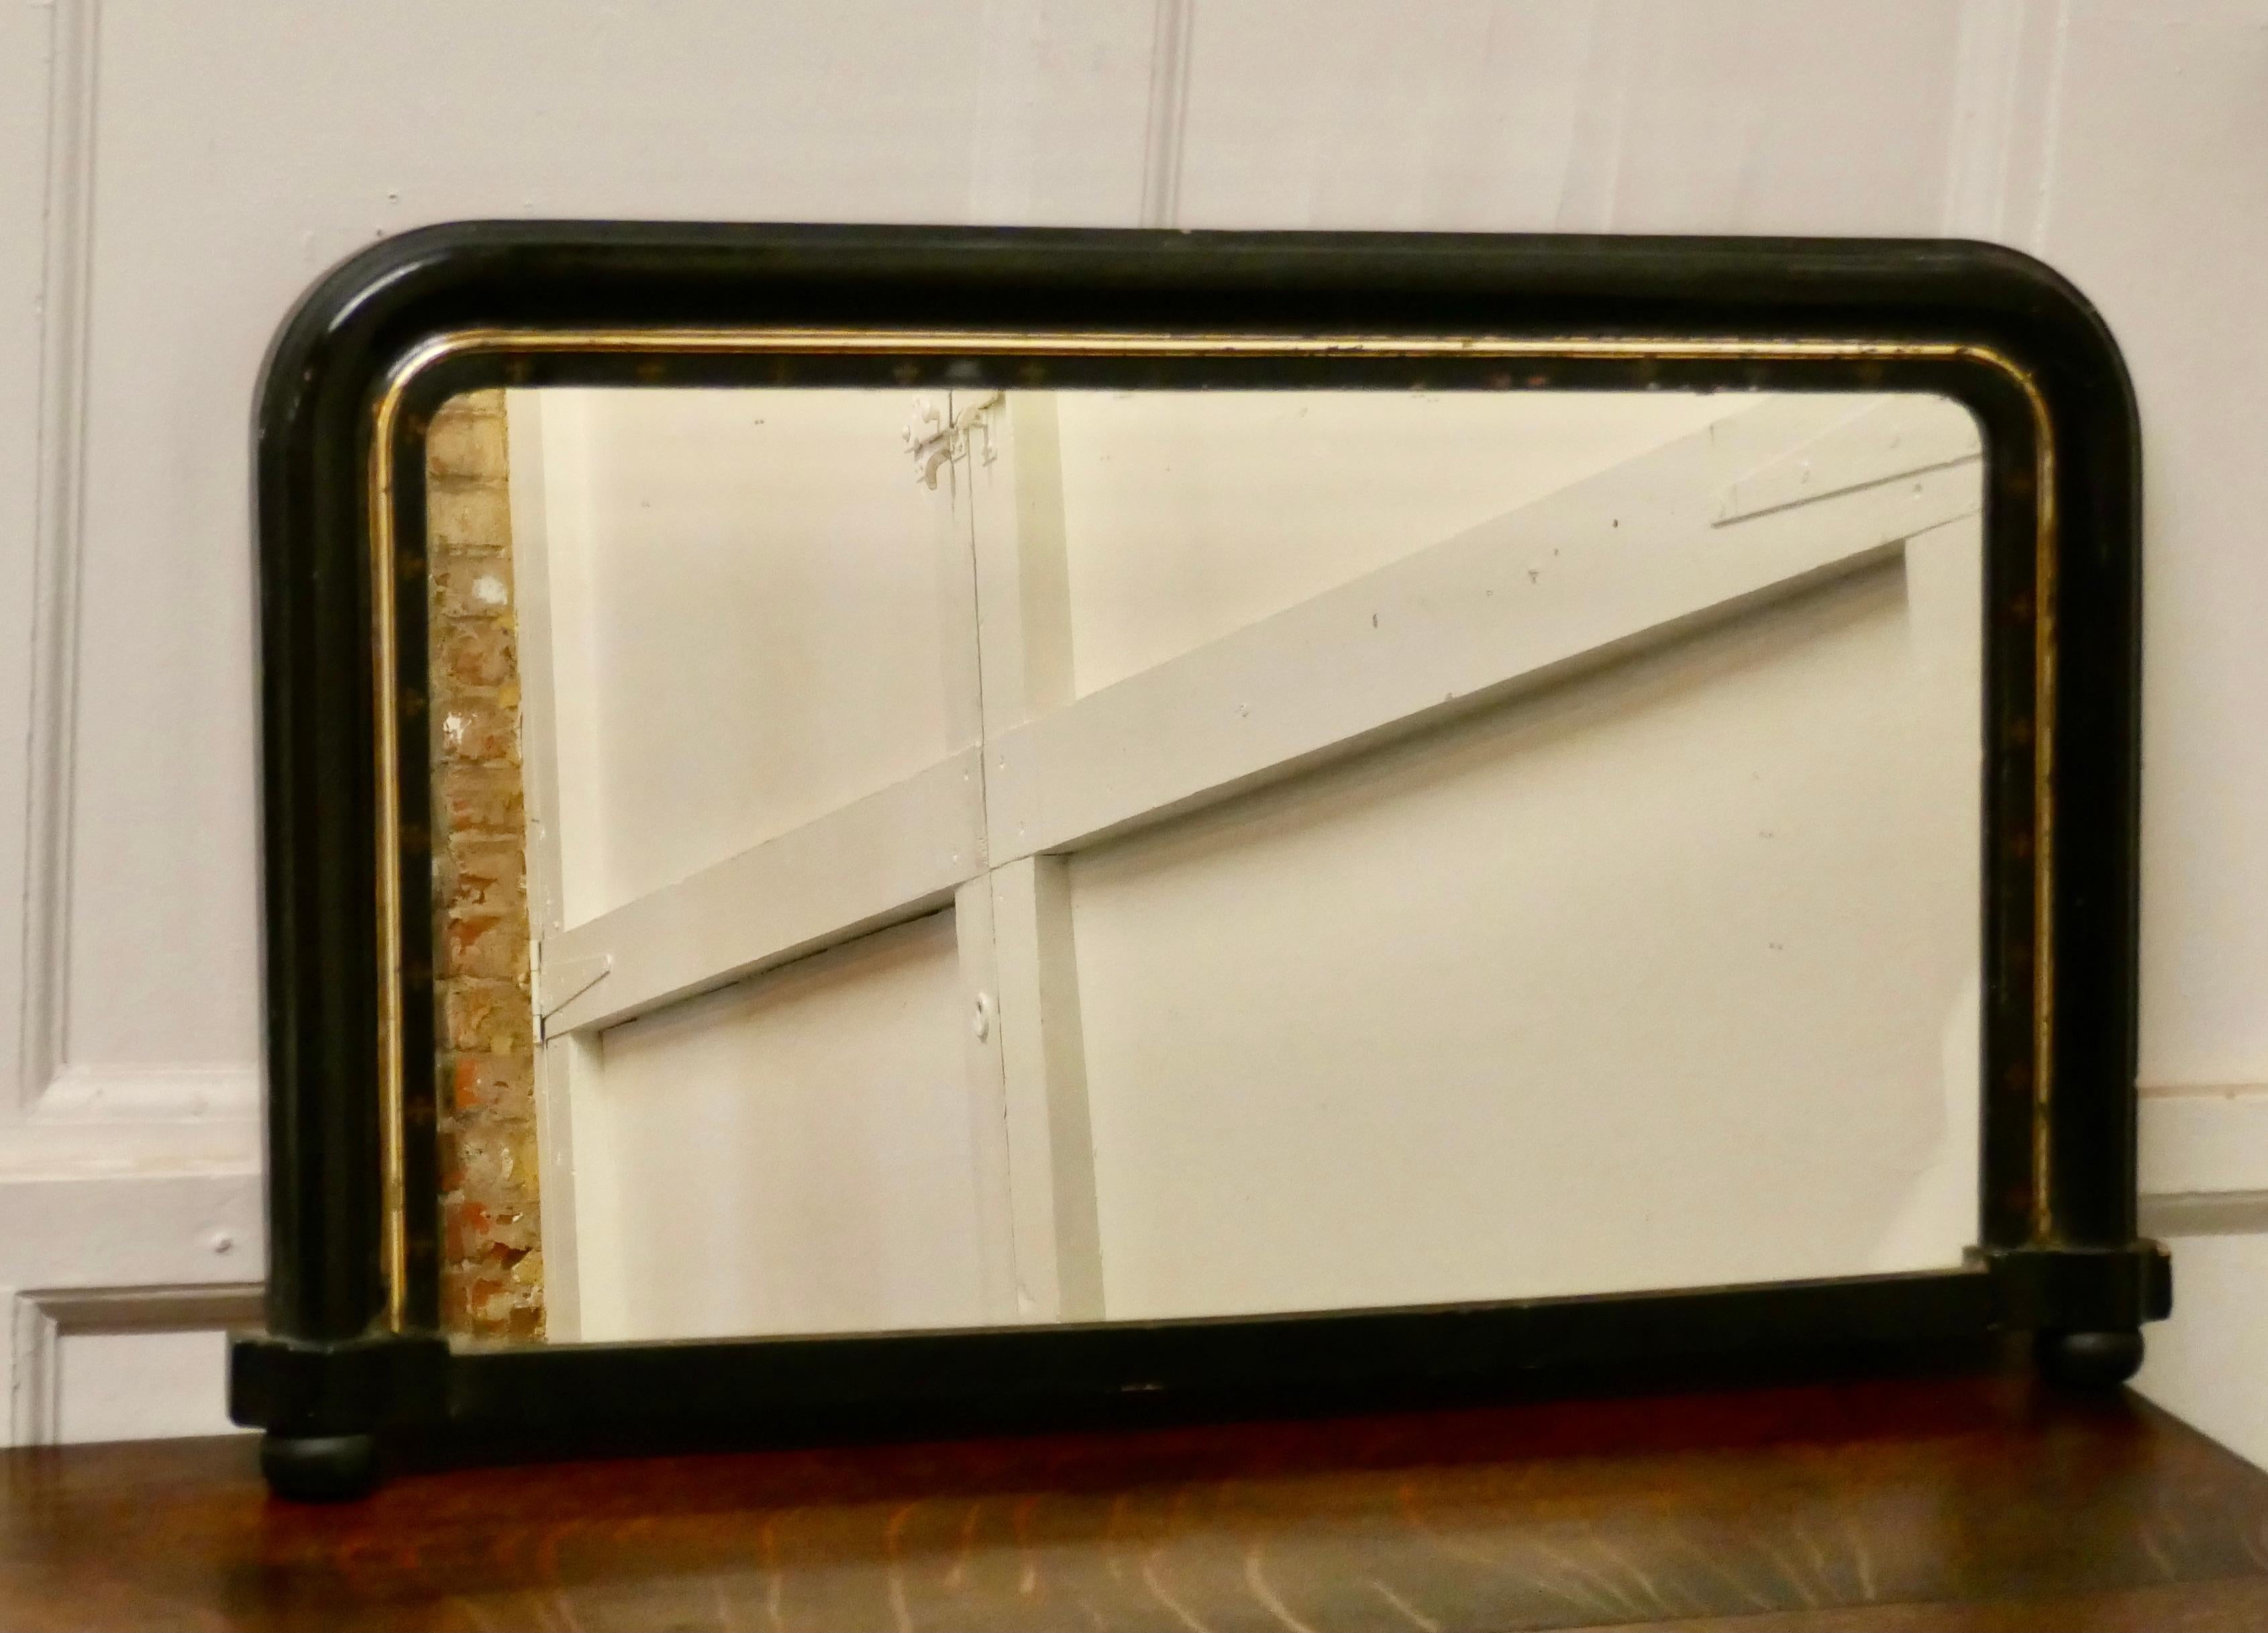 Viktorianischer Spiegel mit schwarzem Lack über dem Mantel

Der Spiegel hat einen 3